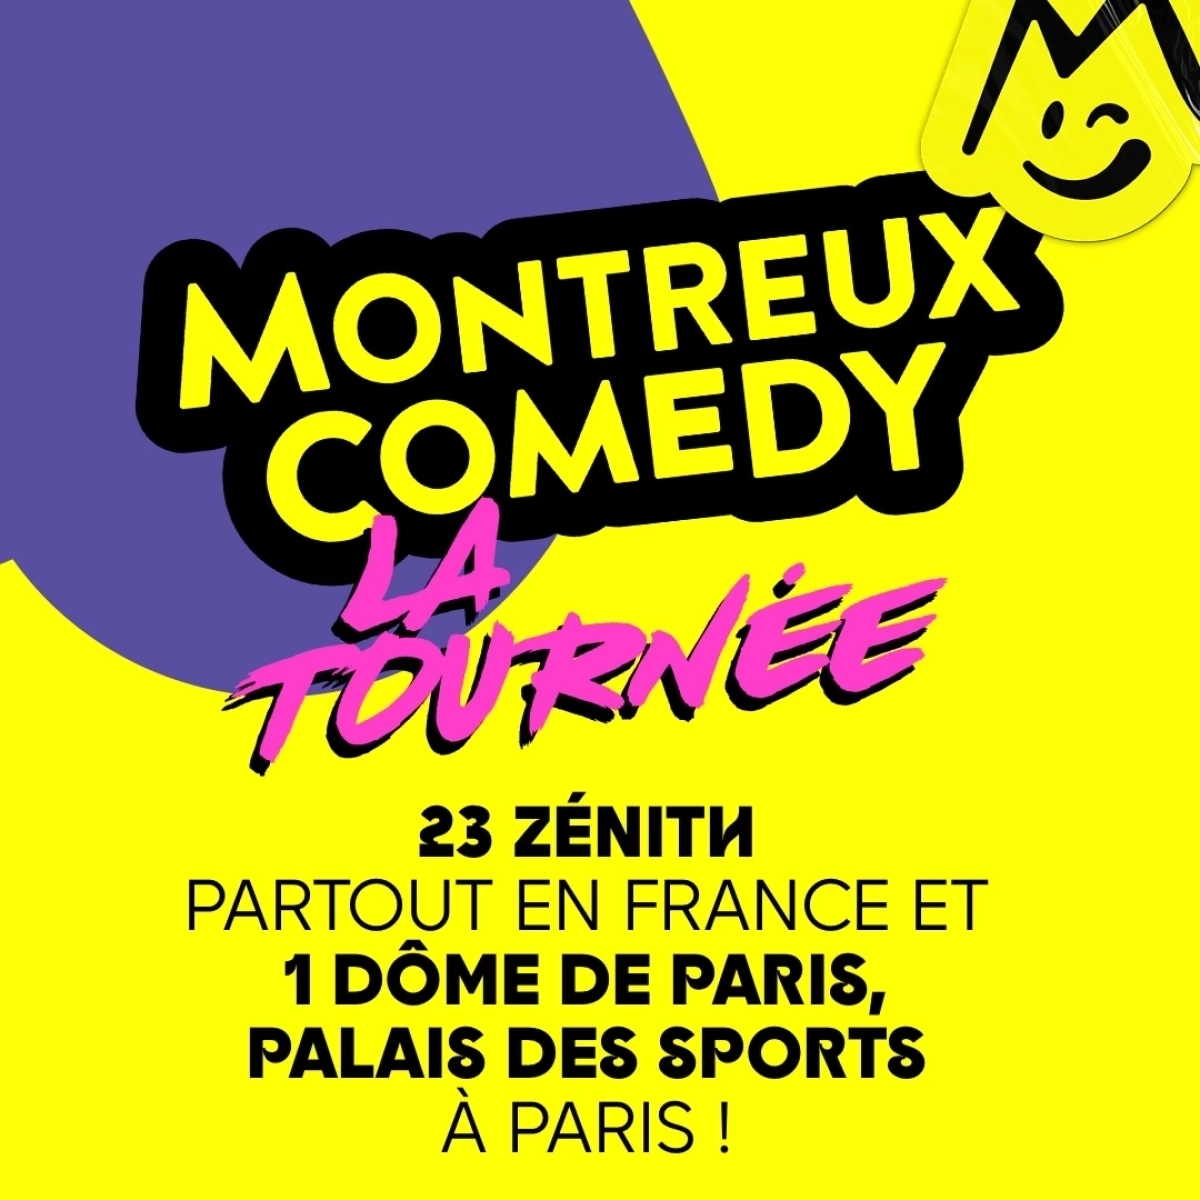 Montreux Comedy - La Tournée en Reims Arena Tickets